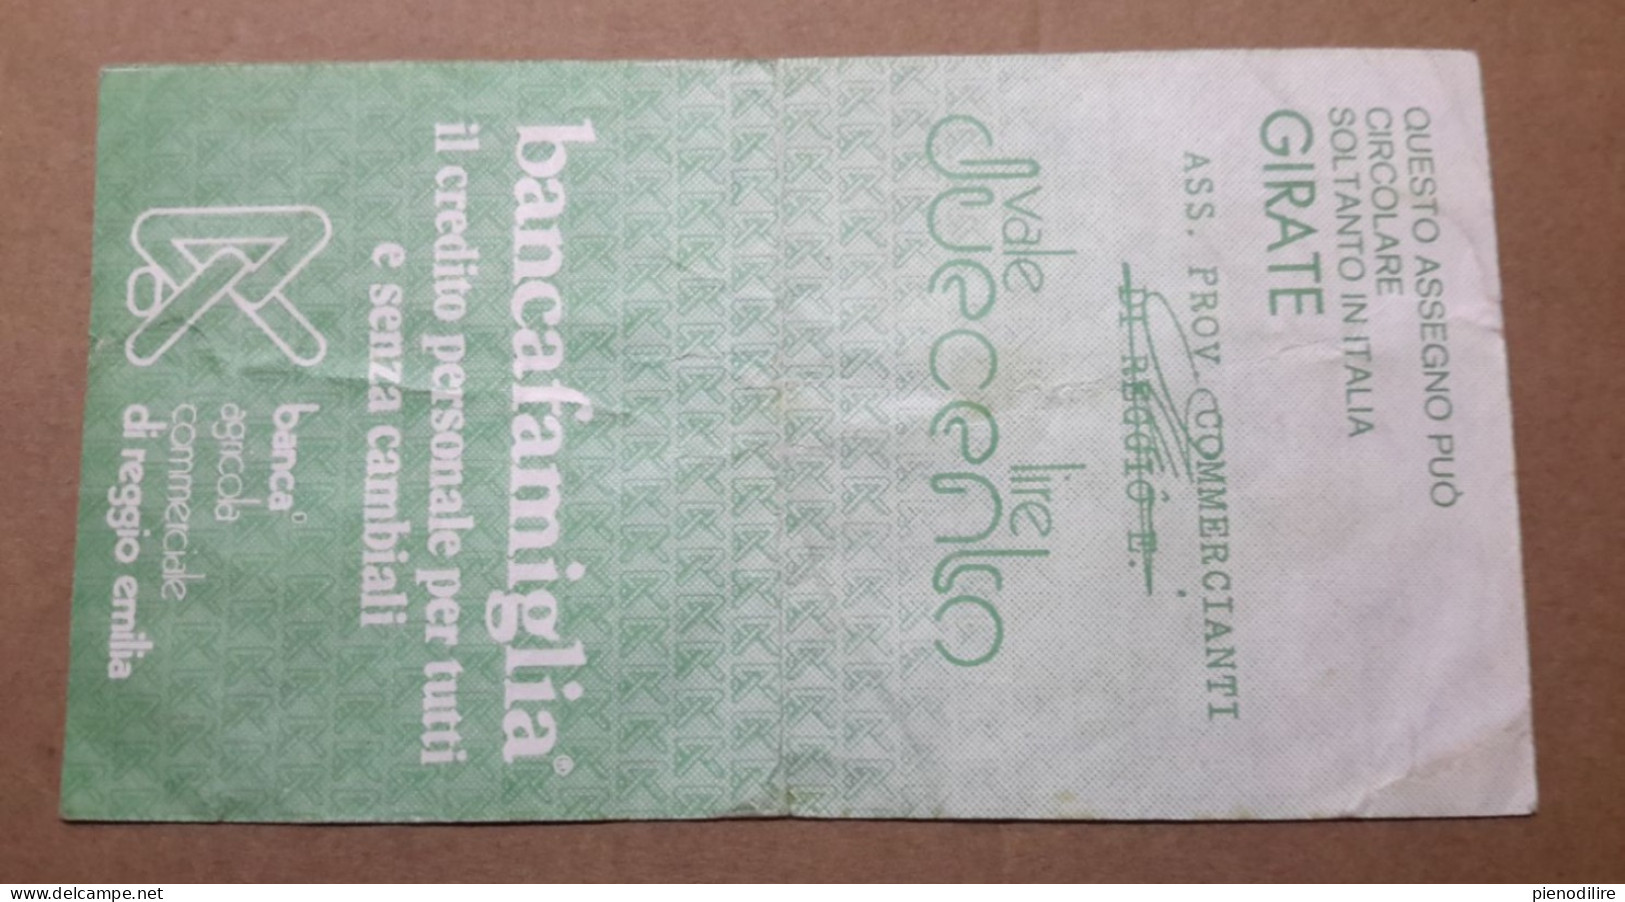 BANCA AGRICOLA COMMERCIALE DI REGGIO EMILIA, 200 Lire 07.10.1977 Ass. Prov. Commercianti "Circolata" (A1.53) - [10] Cheques Y Mini-cheques